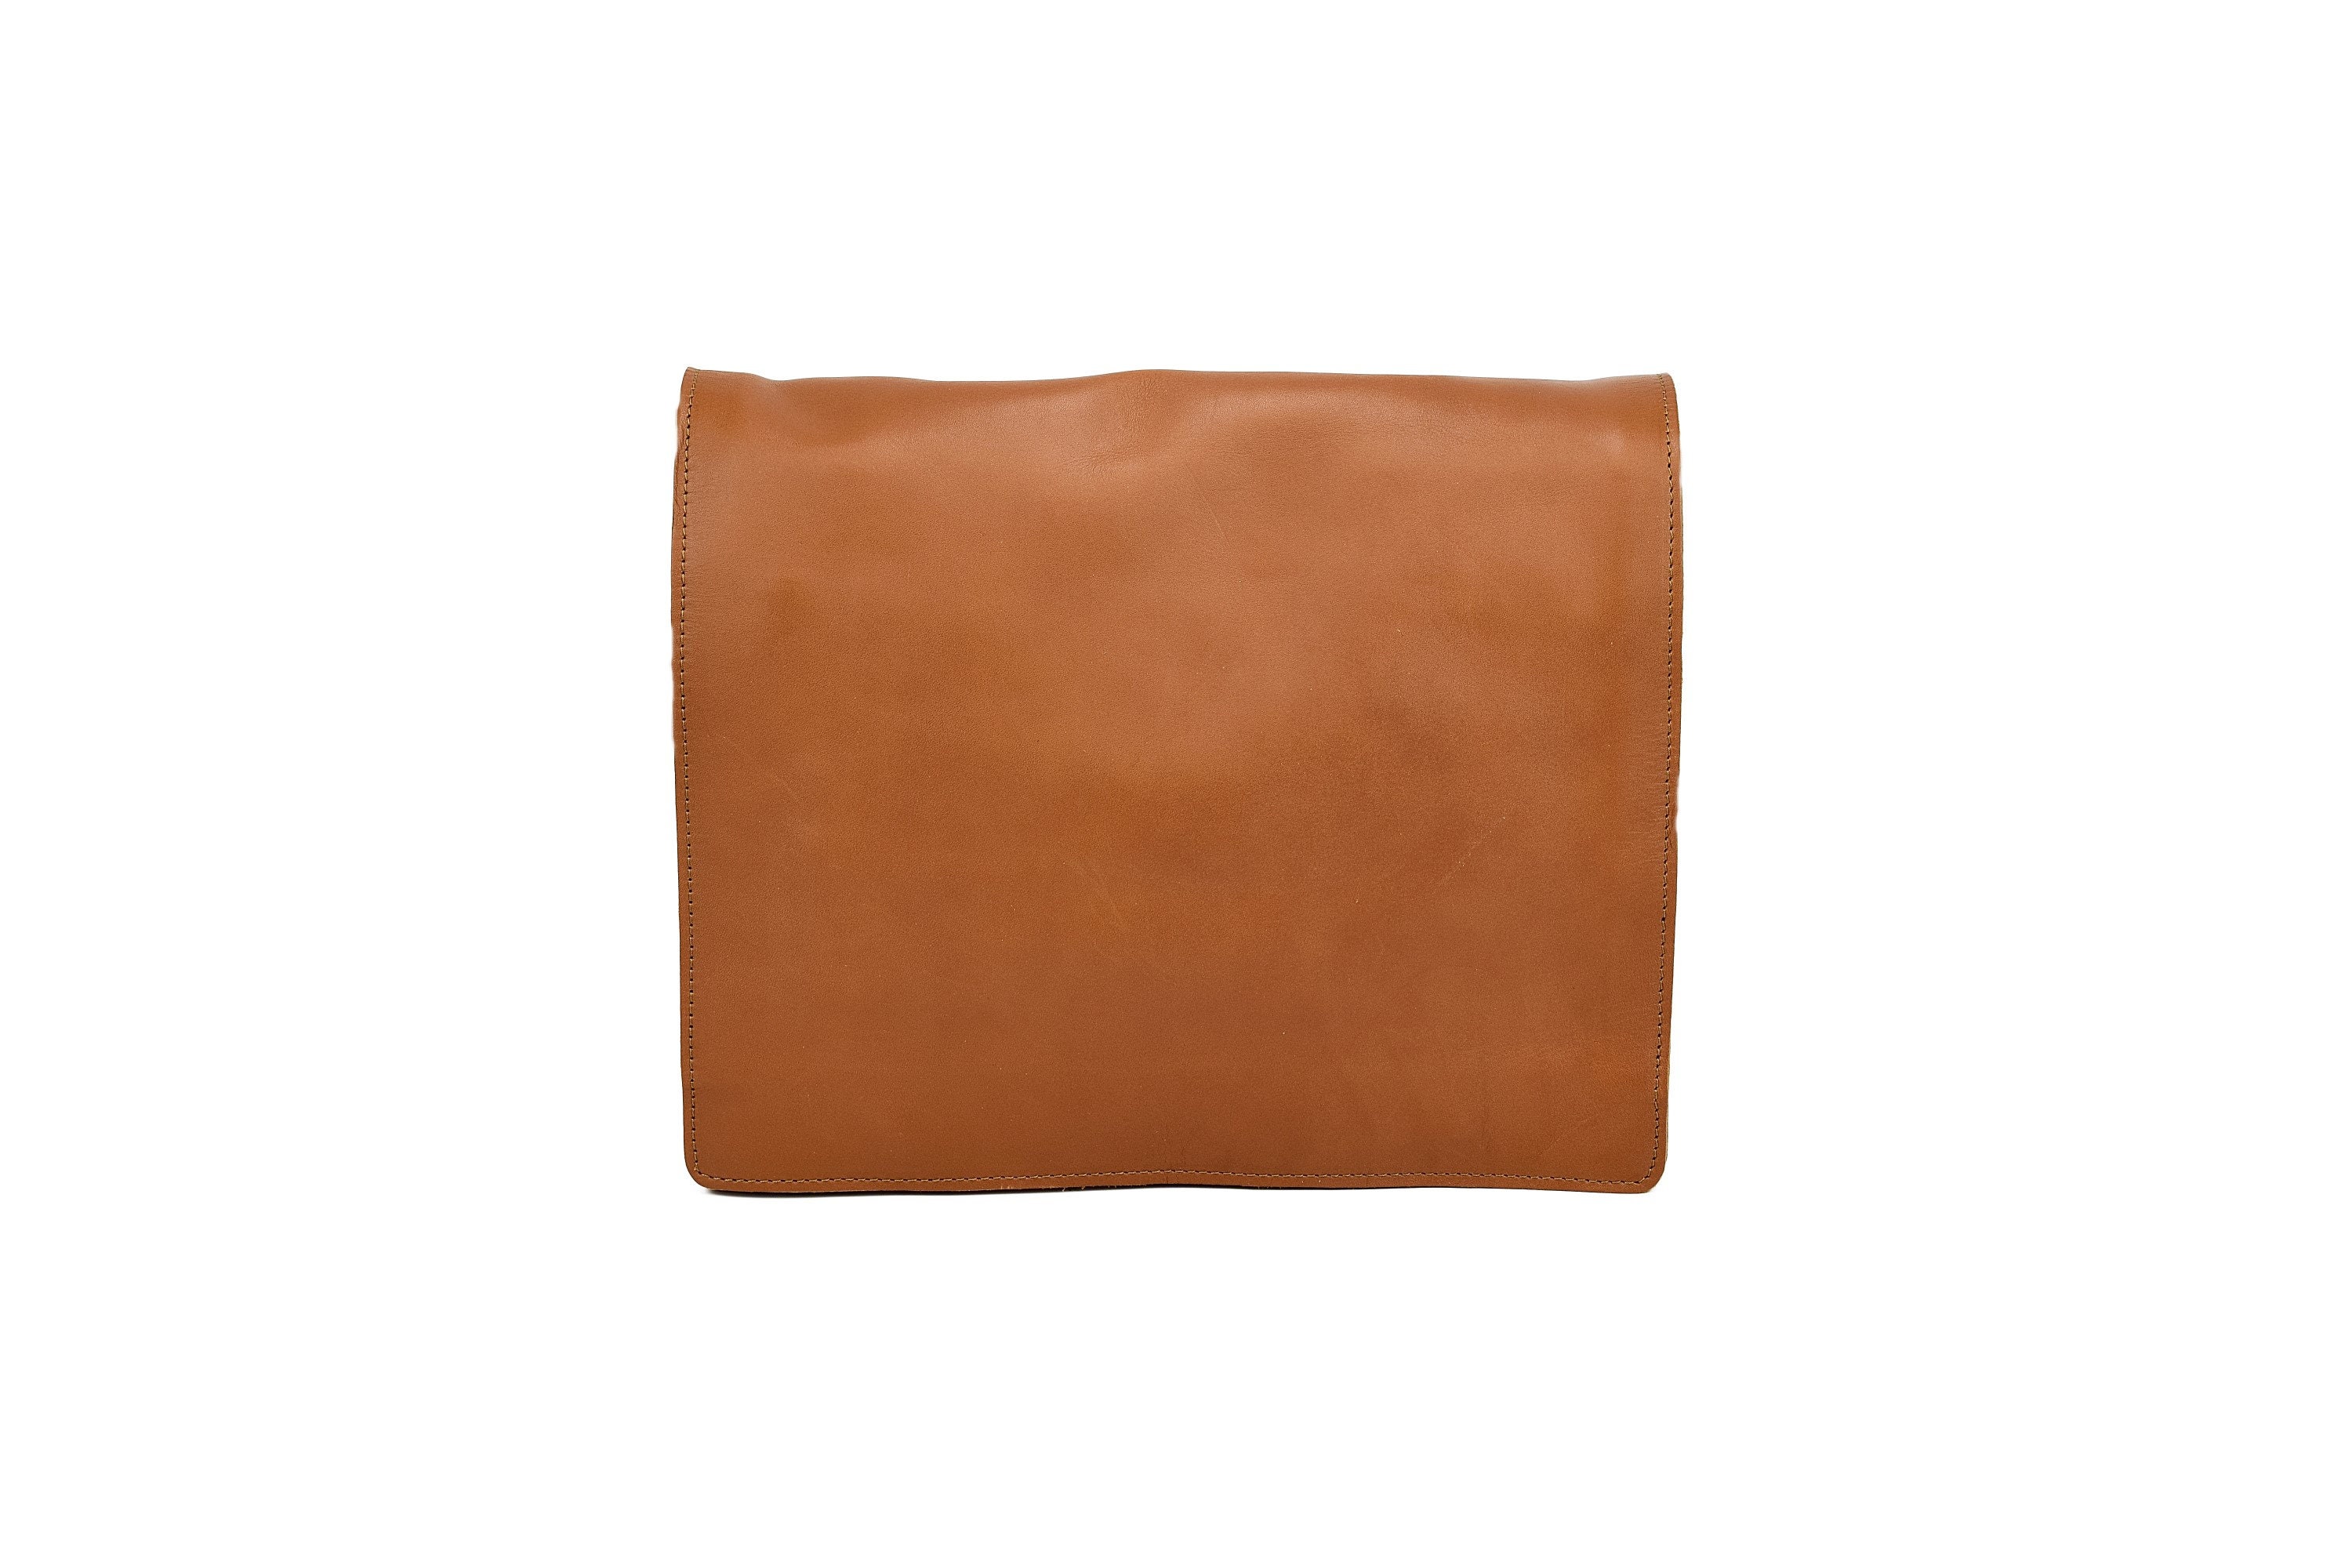 Full Grain Leather Laptop Bag Flap Bag Crossbody Messenger Bag | Etsy